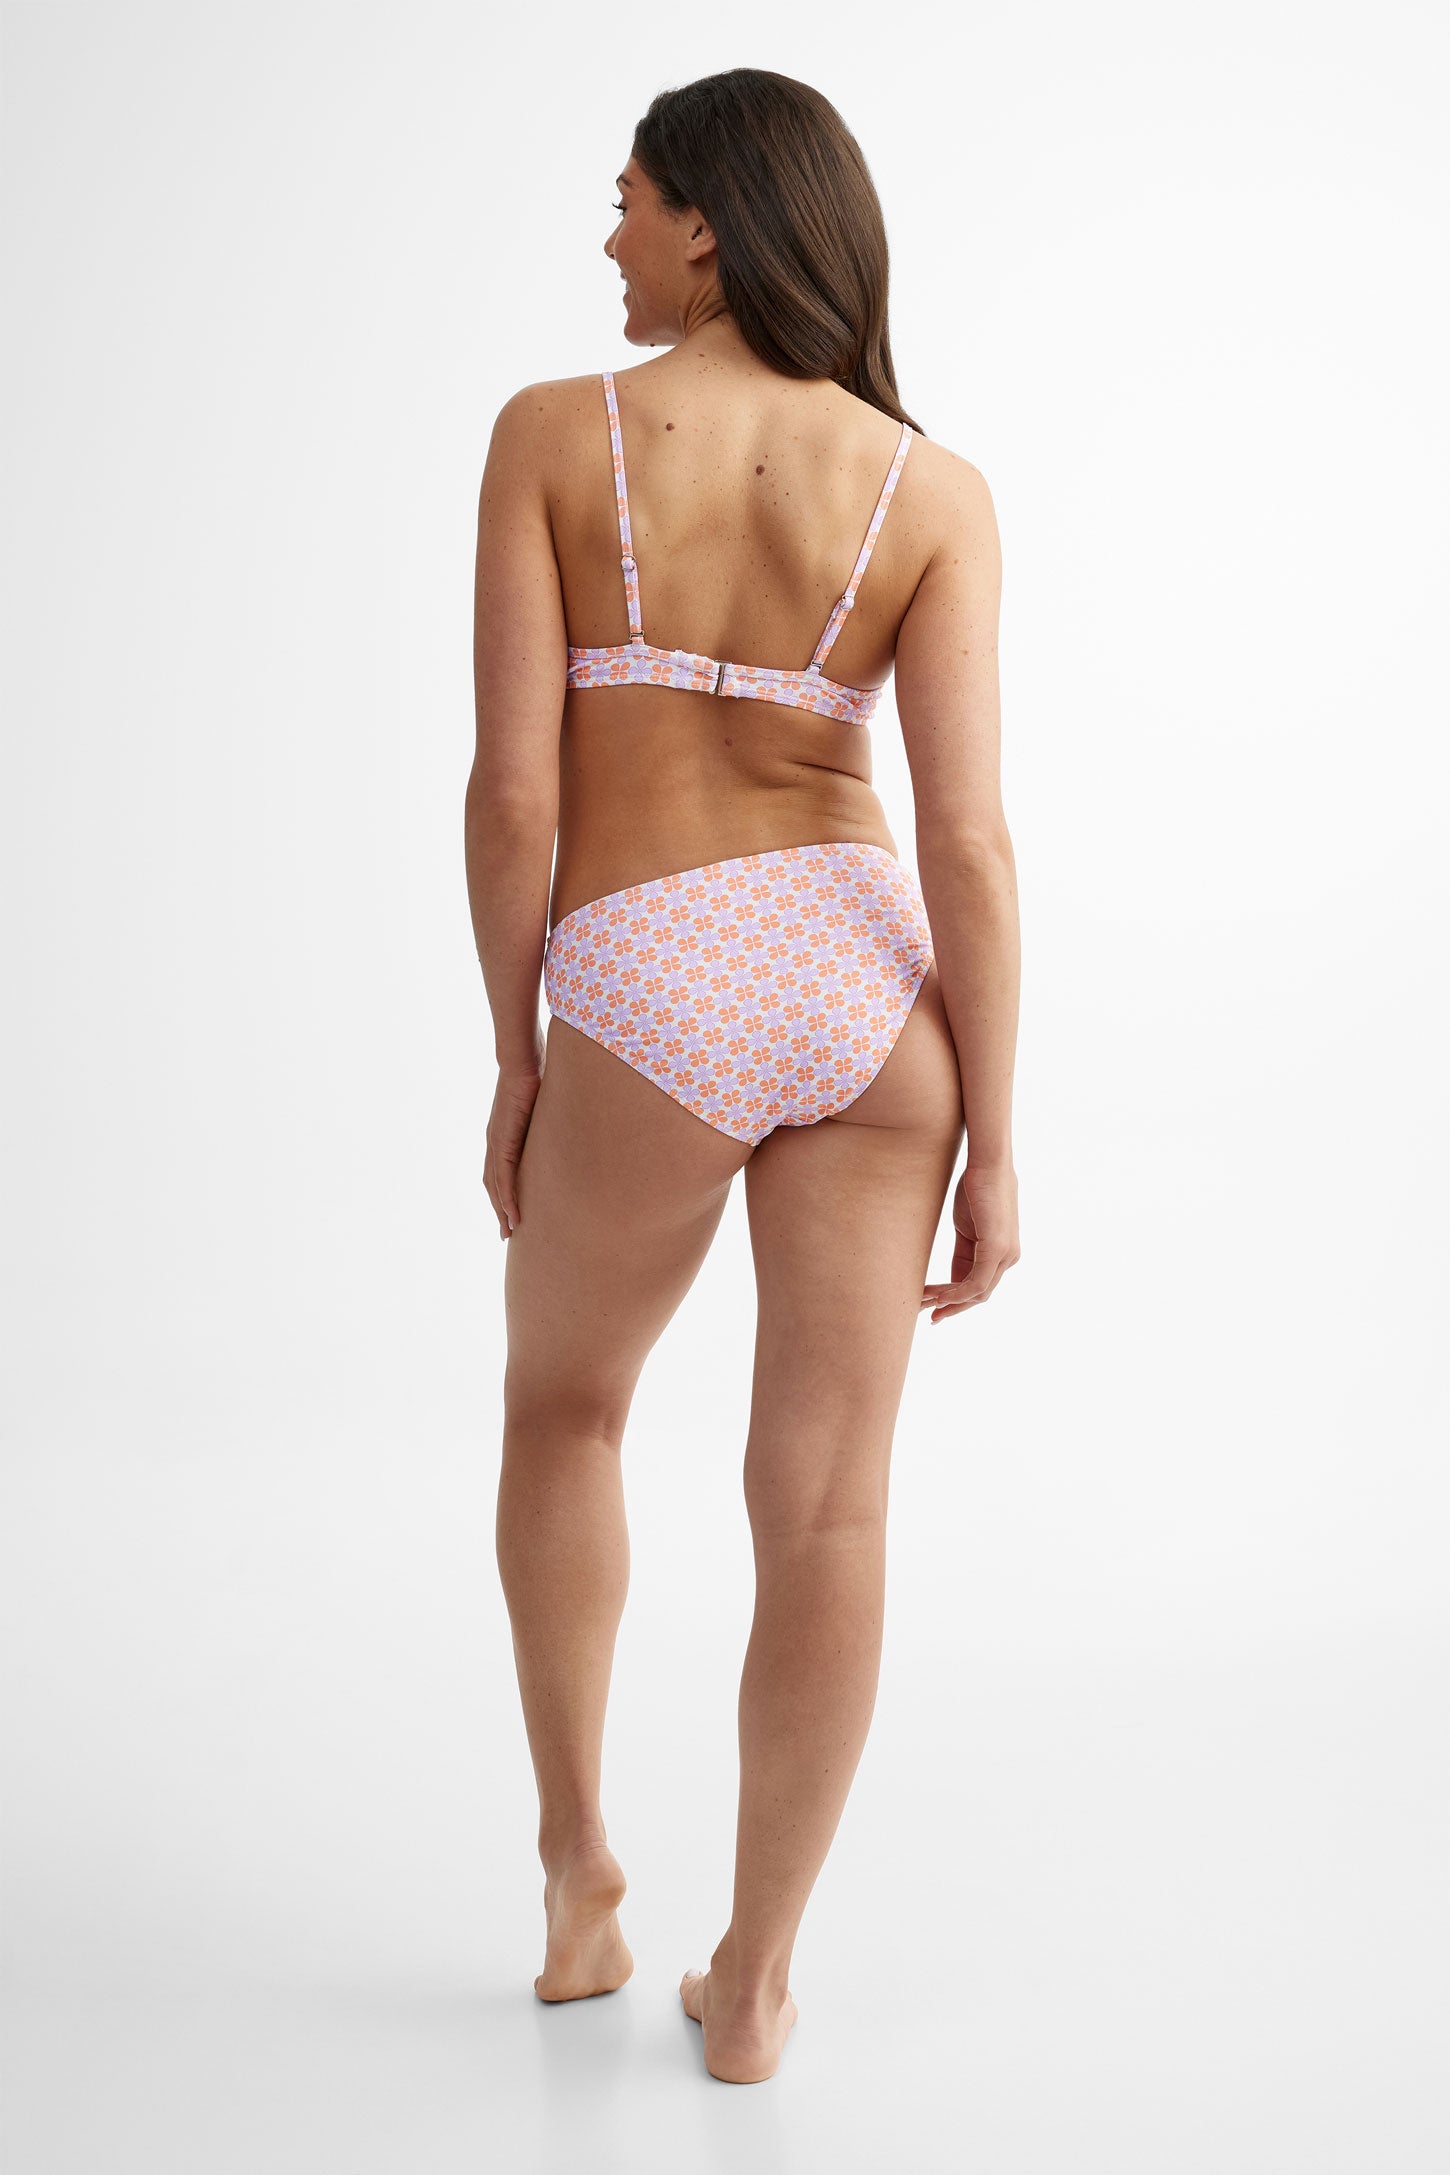 Haut de maillot de bain Bikini avec armature, 2/40$ - Femme && ROSE MULTI